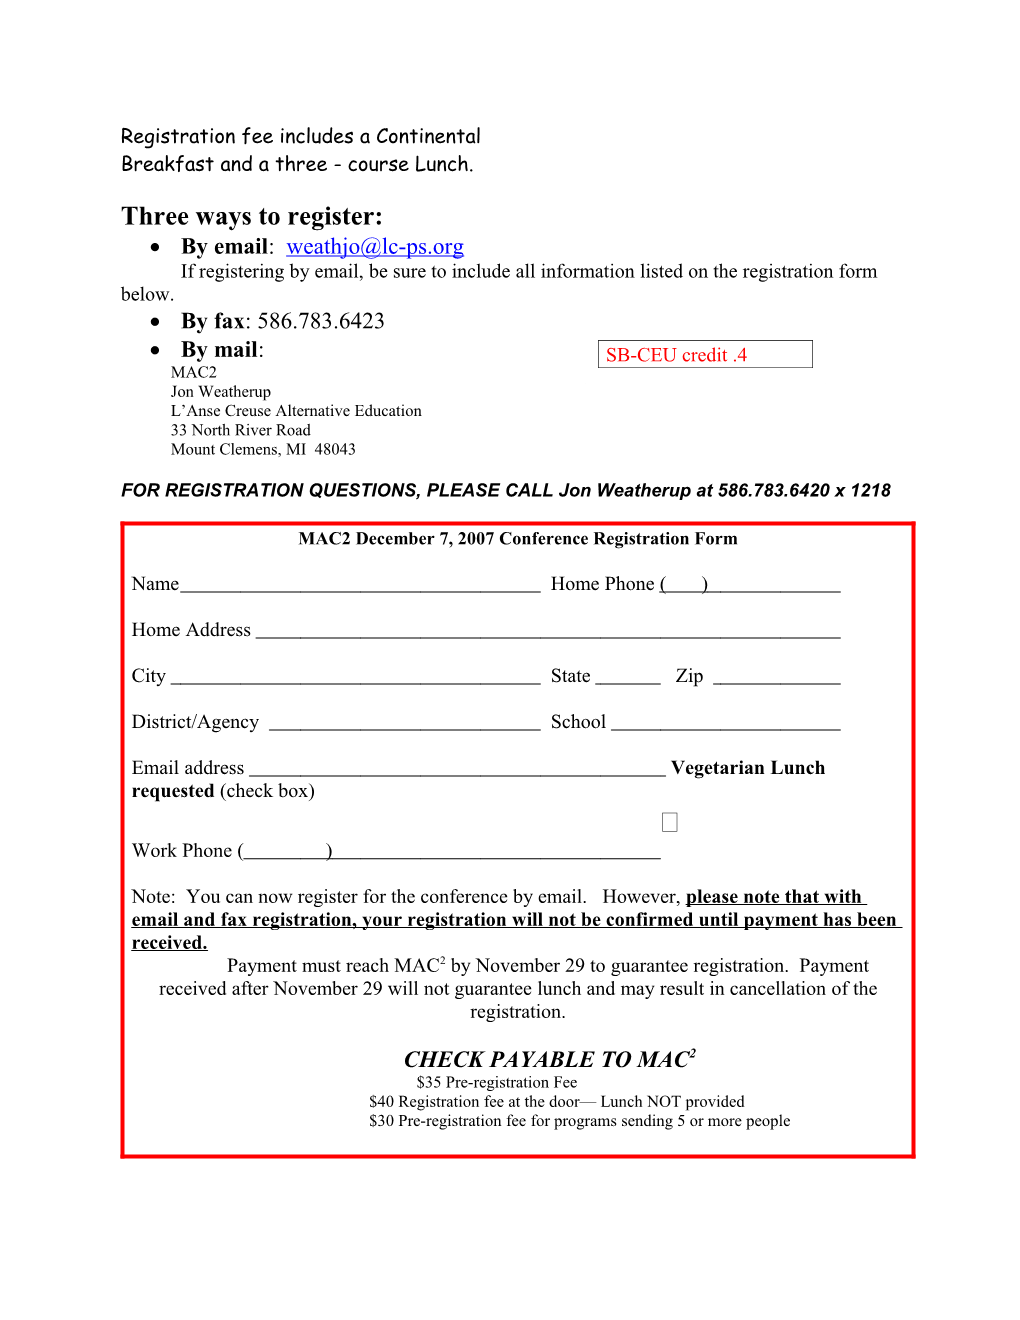 MAC2 Conference Registration Form